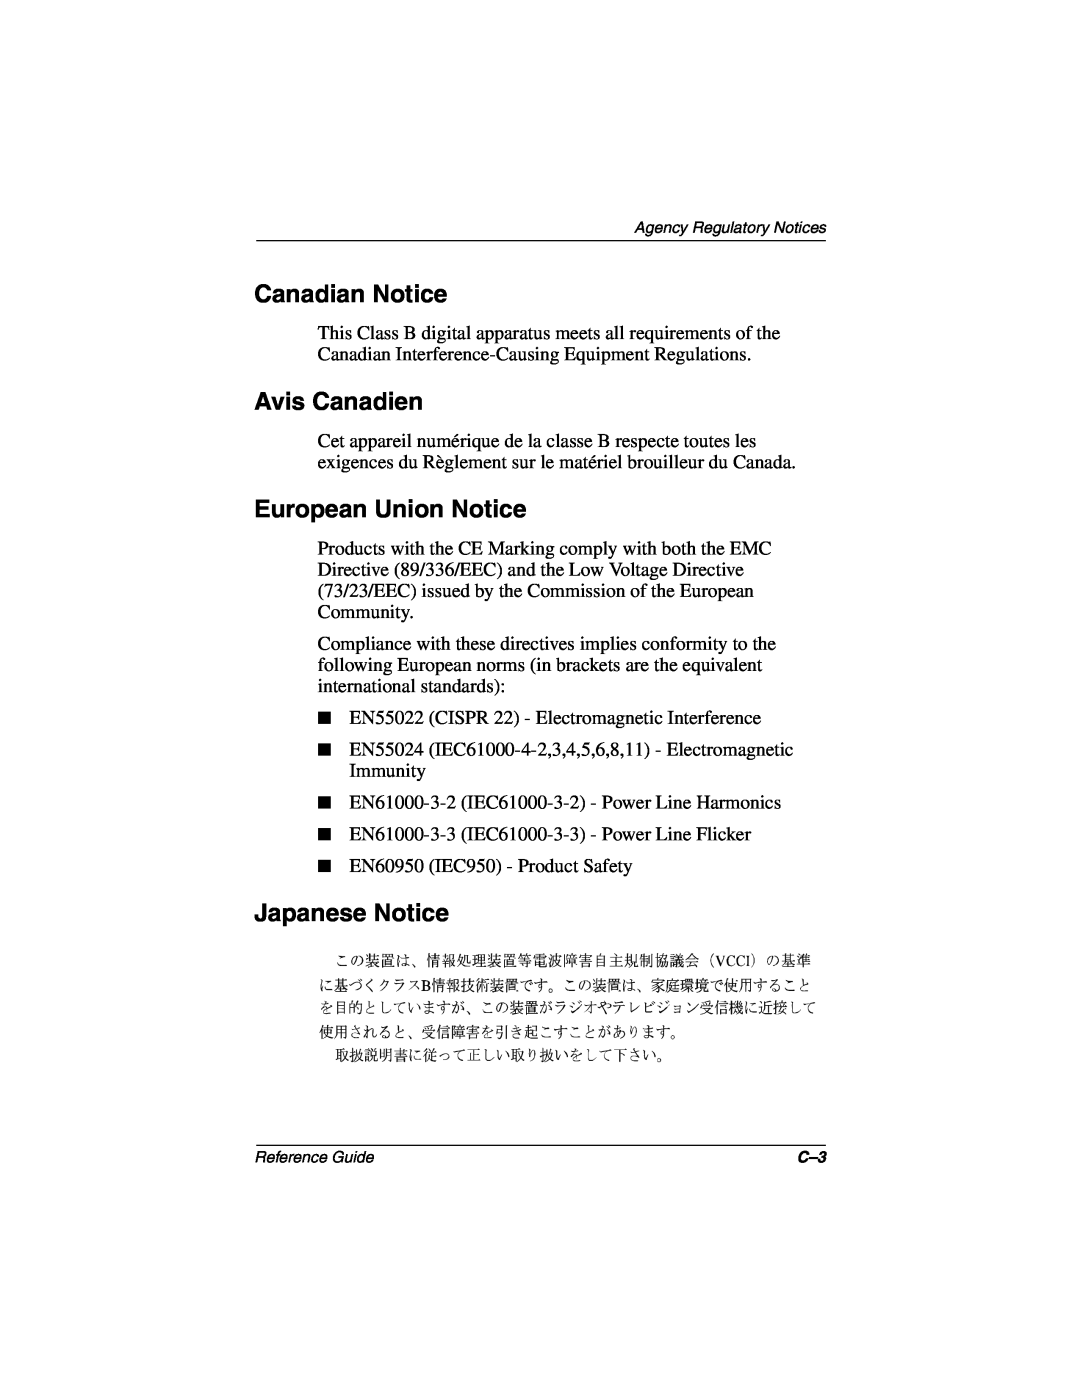 Compaq 5017 manual Canadian Notice, Avis Canadien, European Union Notice, Japanese Notice 